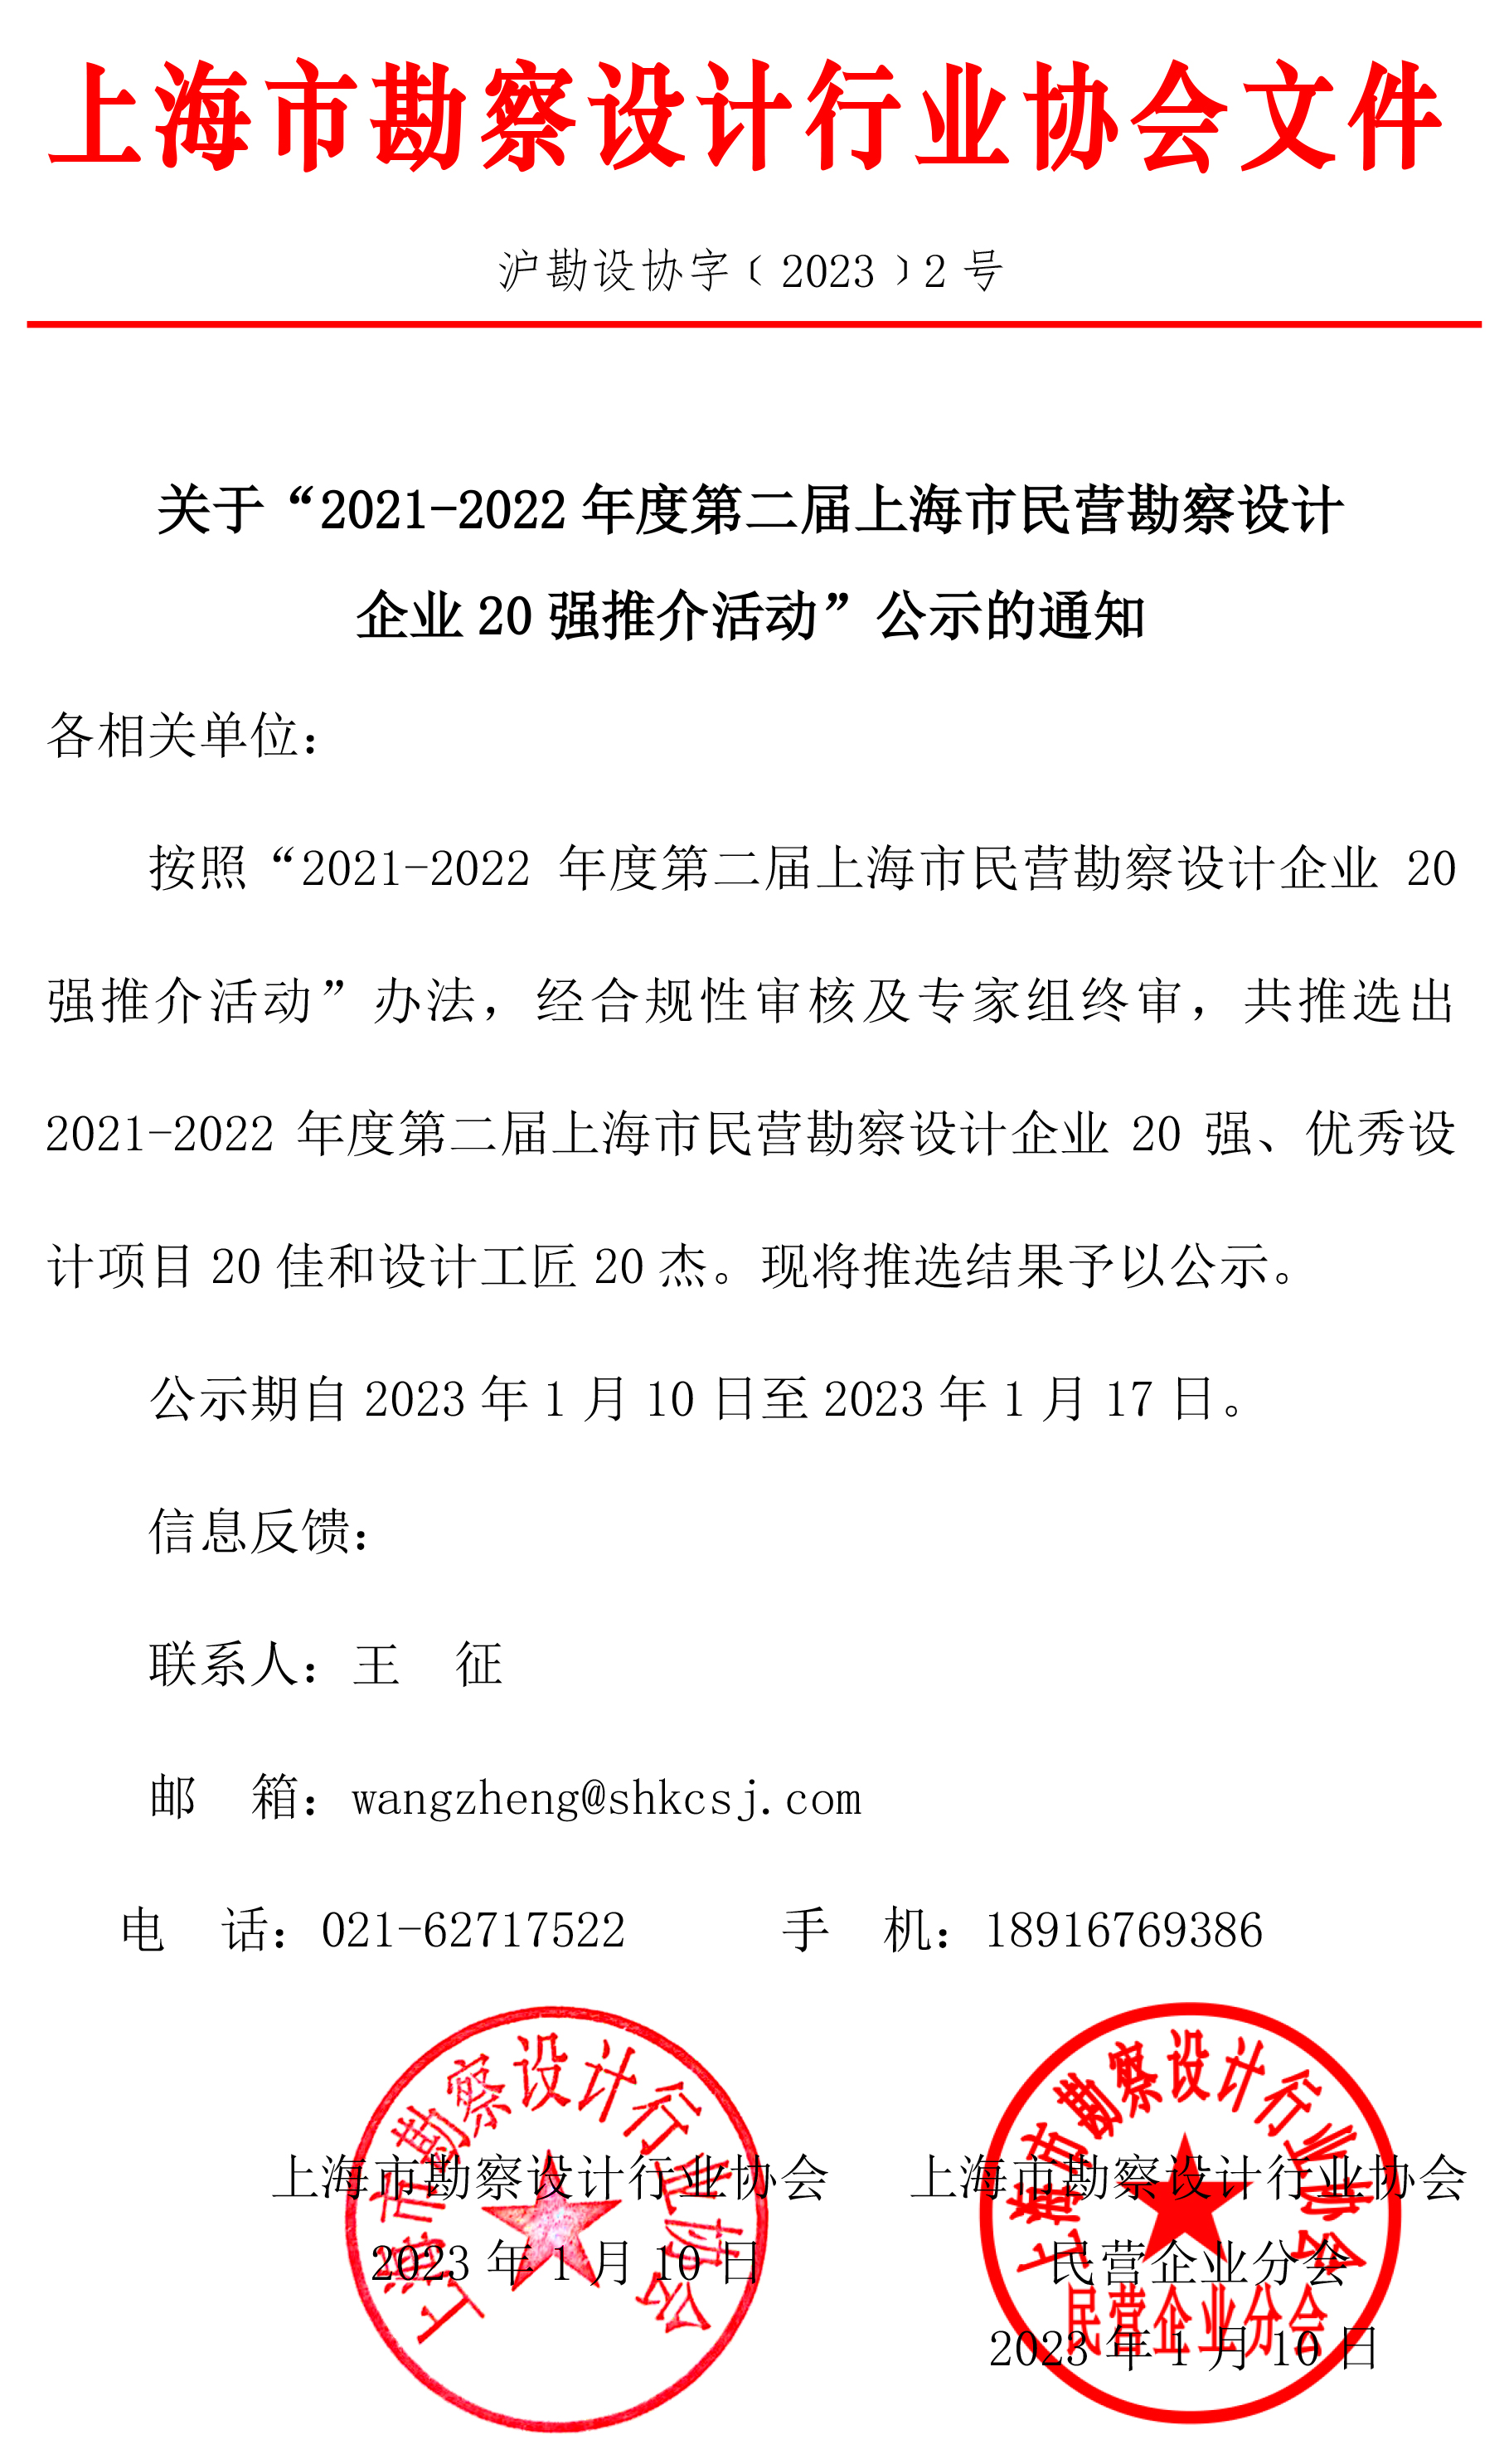 关于“2021-2022年度第二届上海市民营勘察设计企业20强推介活动”公示的通知.jpg